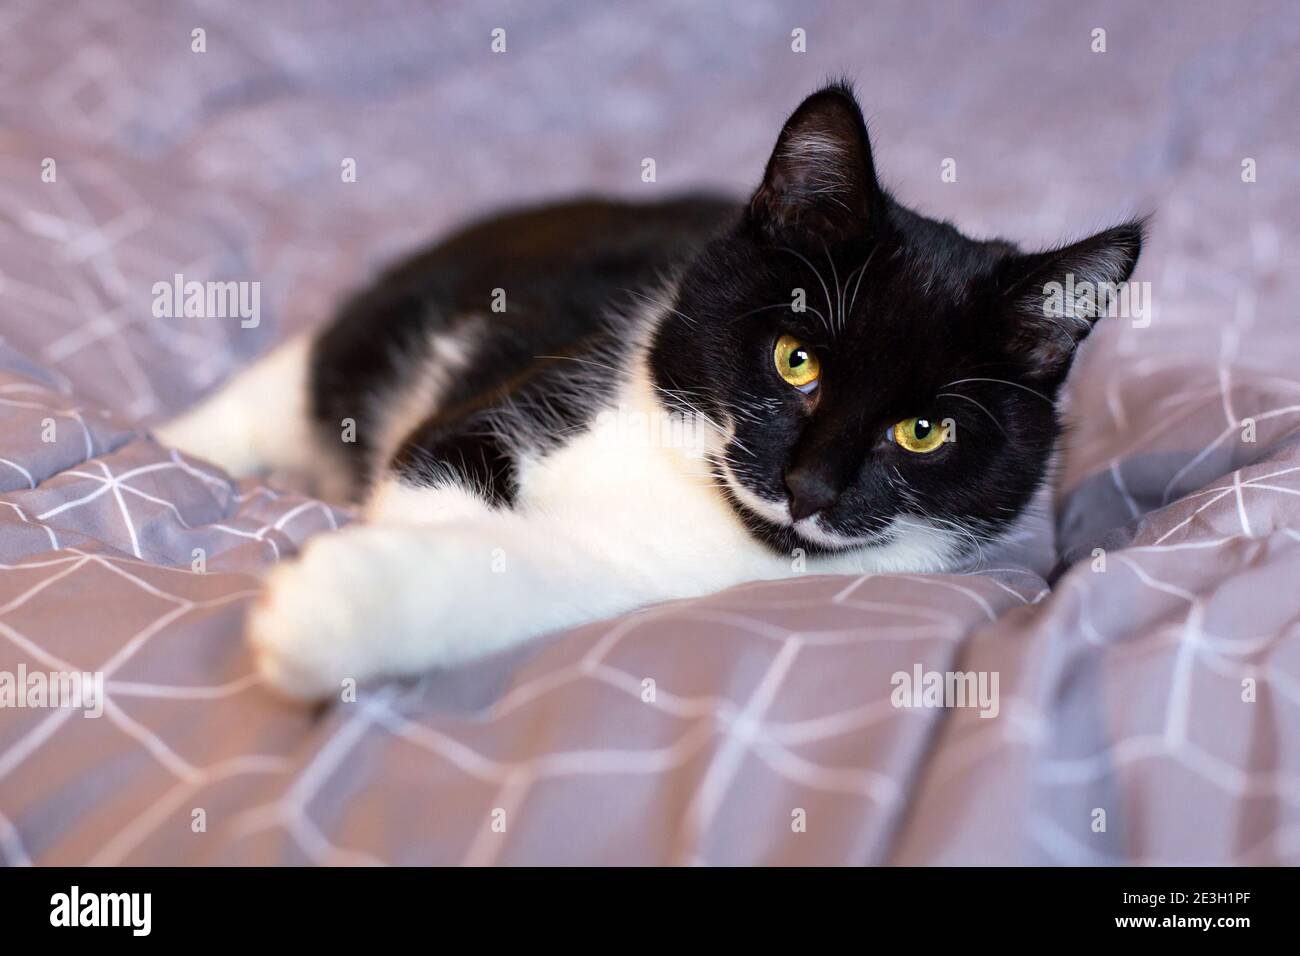 Eine wunderschöne schwarze Katze mit einem weißen Schnurrbart schaut mit gelben Augen auf die Kamera. Stockfoto